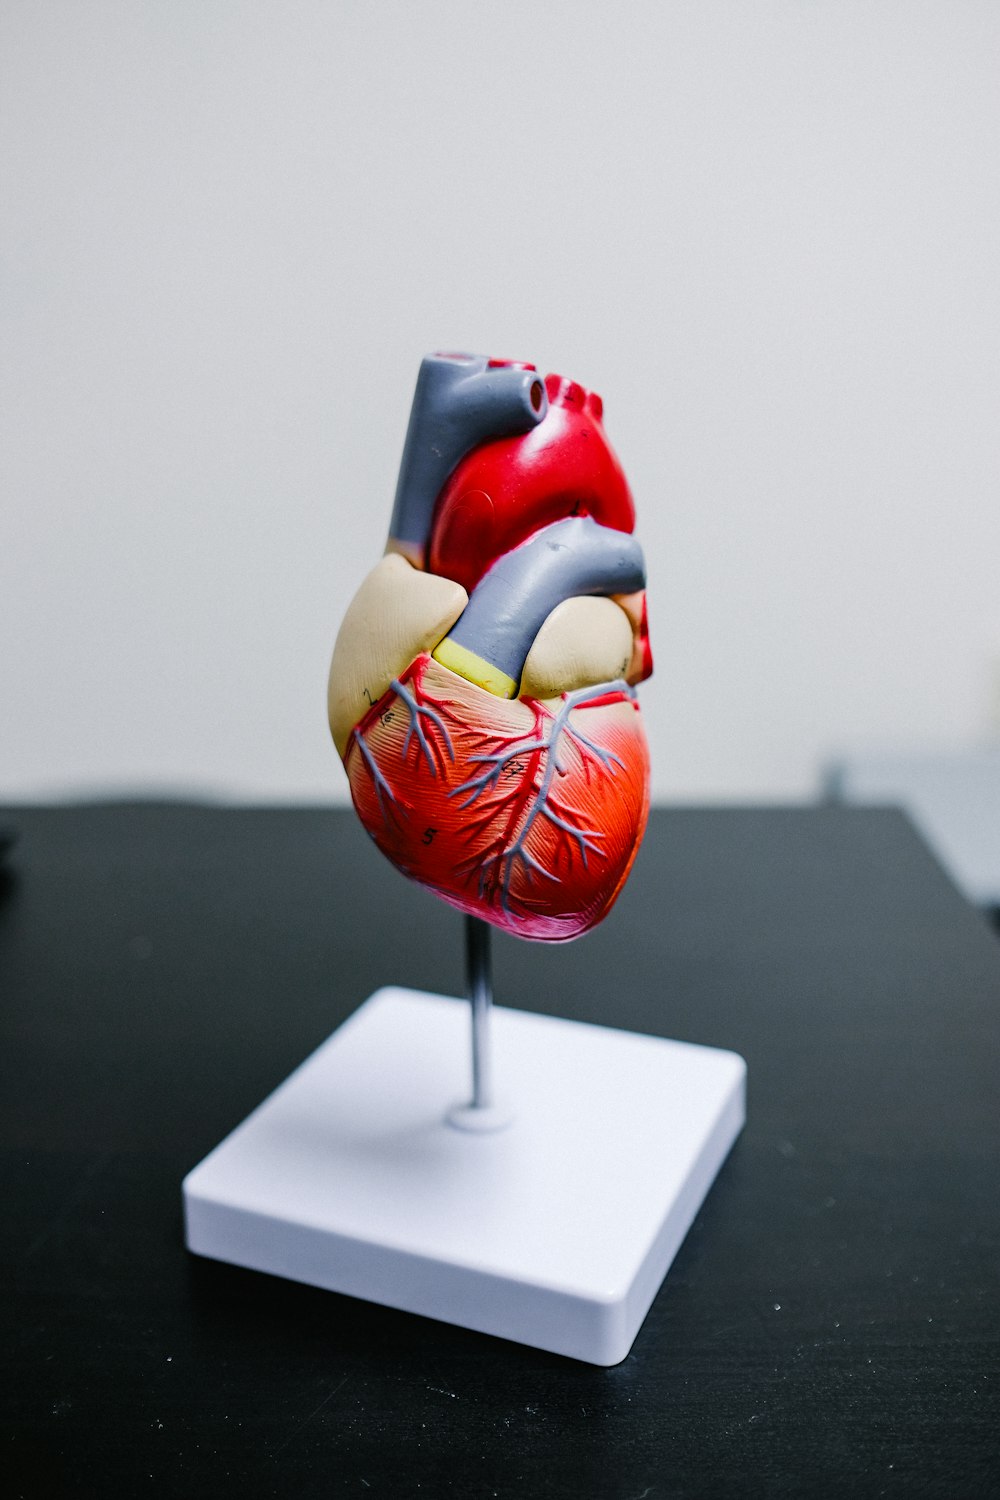 Imágenes de Anatomical Heart | Descarga imágenes gratuitas en Unsplash